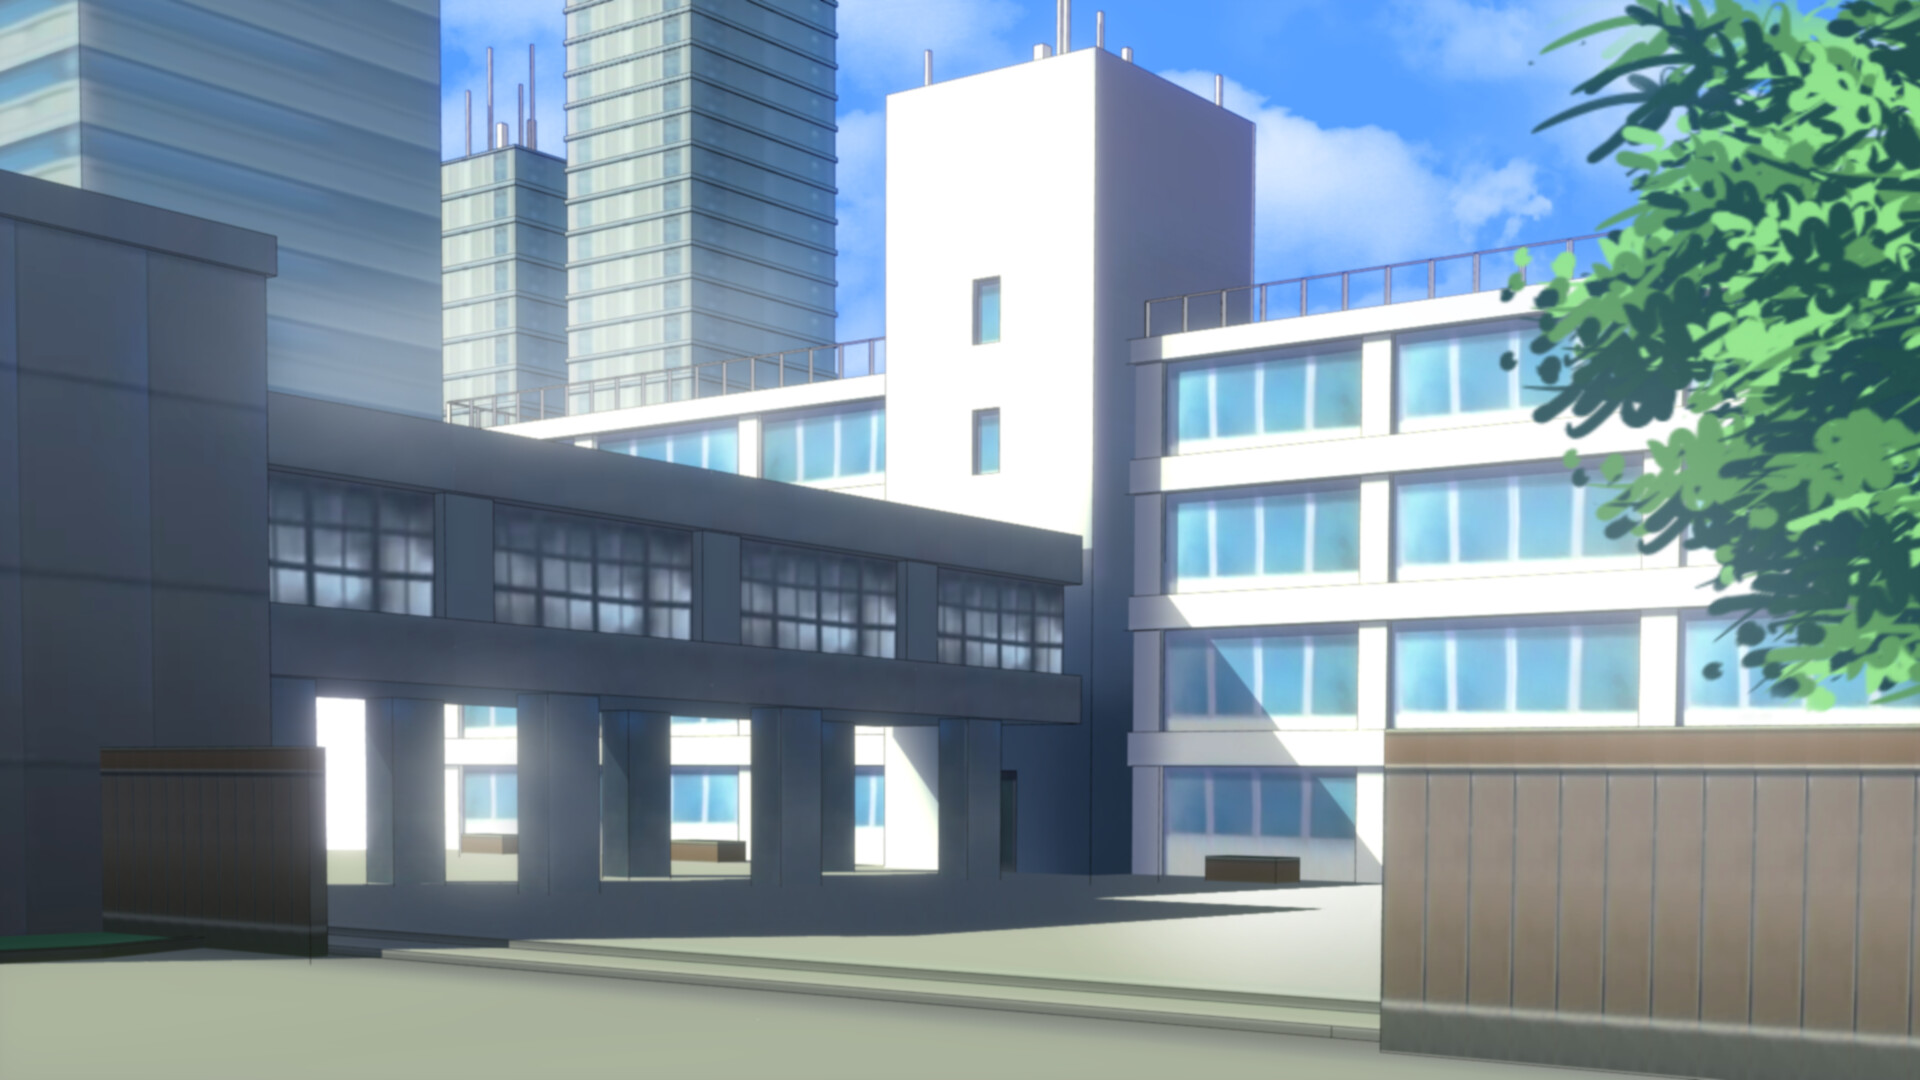 19+] Anime Building HD 4k Wallpapers - WallpaperSafari